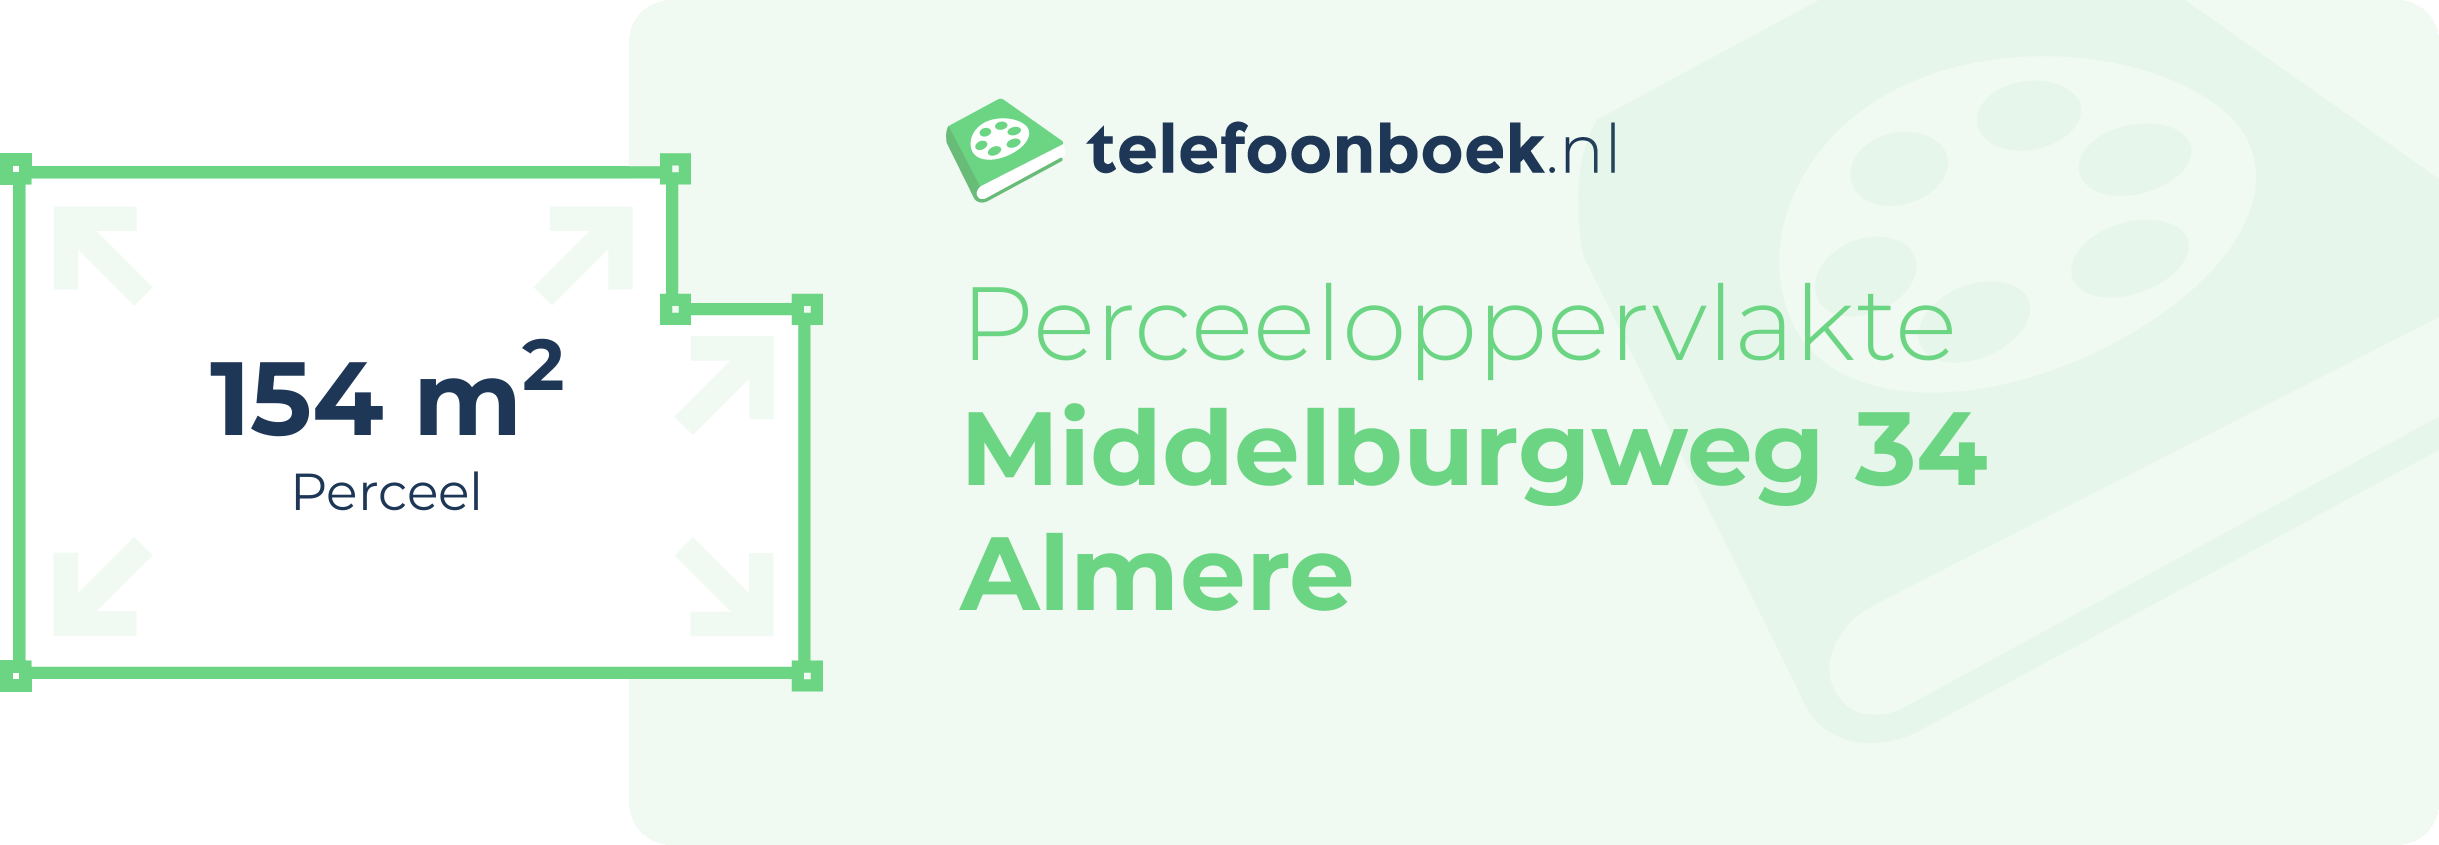 Perceeloppervlakte Middelburgweg 34 Almere